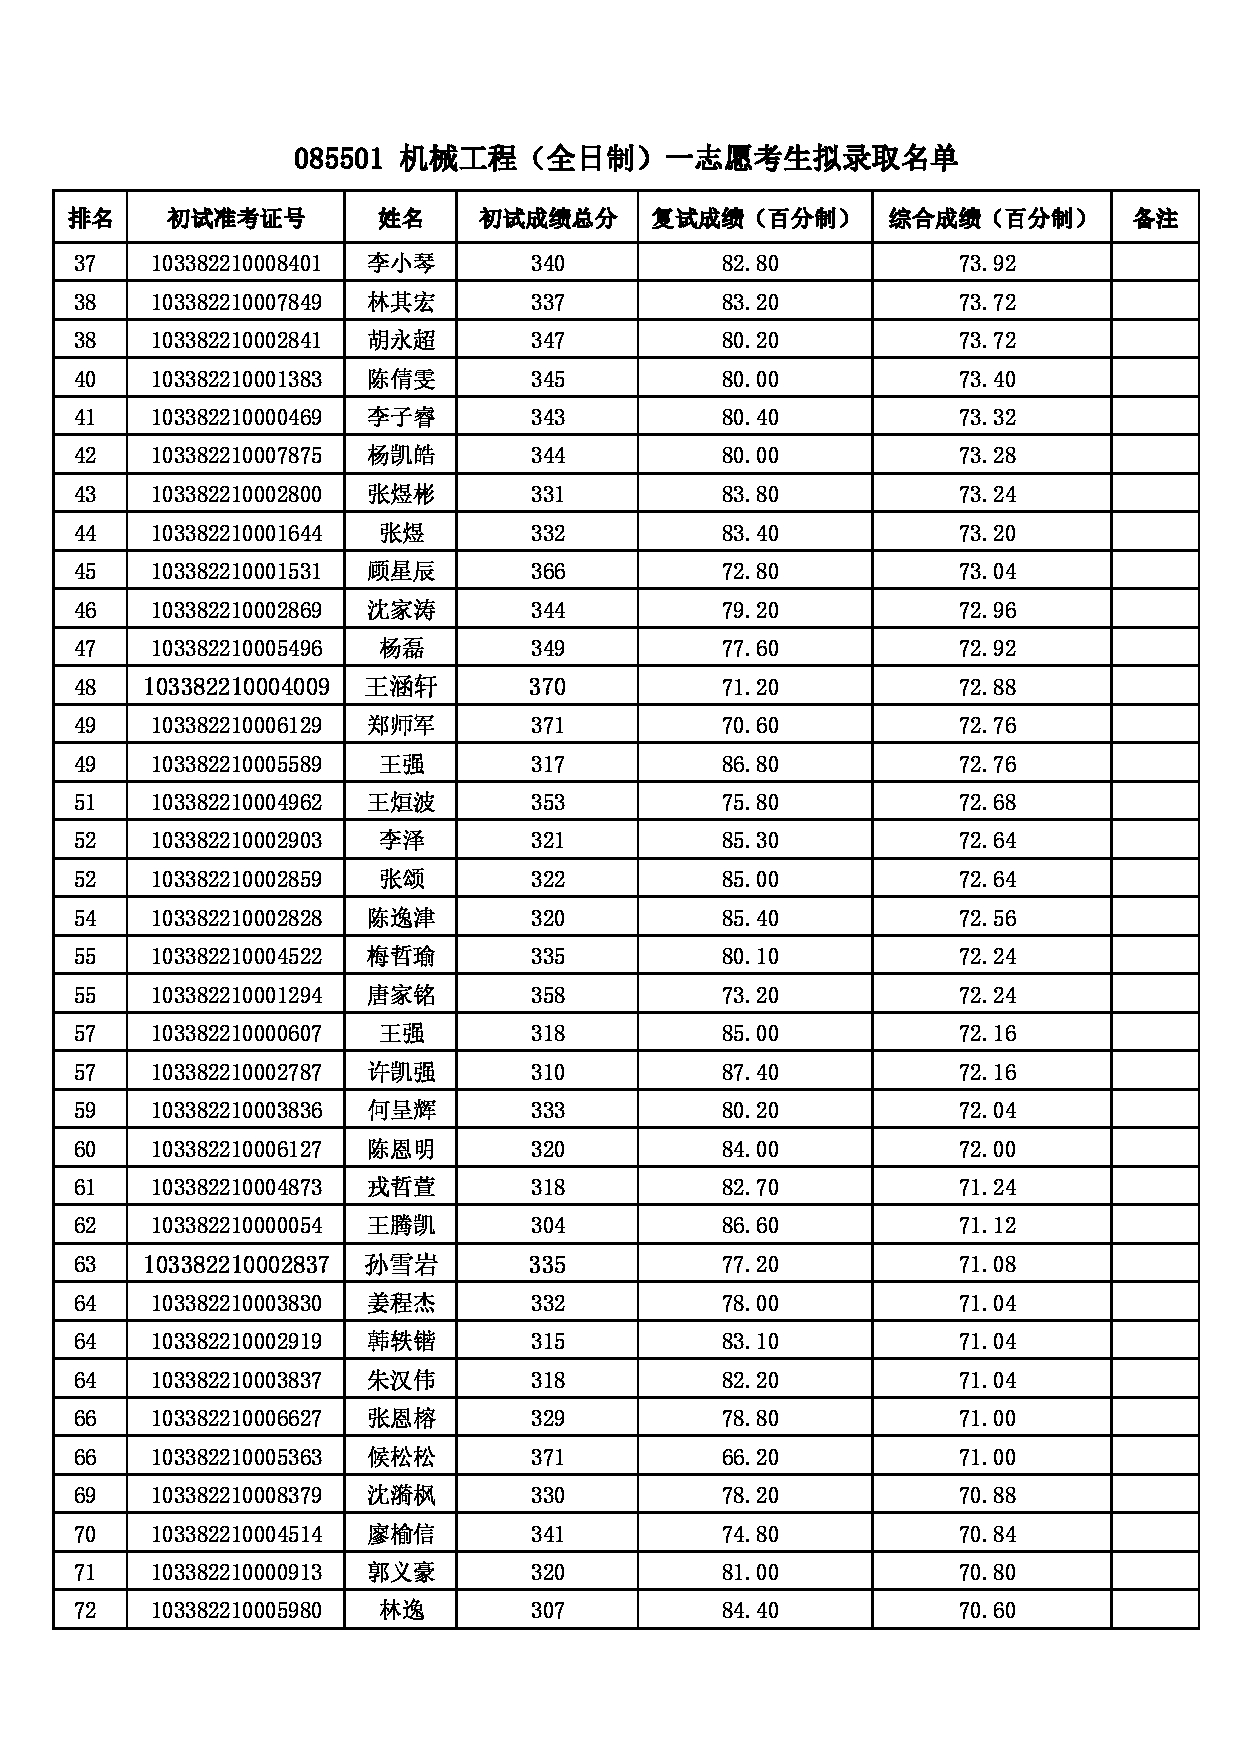 2022考研拟录取名单：浙江理工大学2022年 085501机械工程一志愿考生拟录取名单第2页